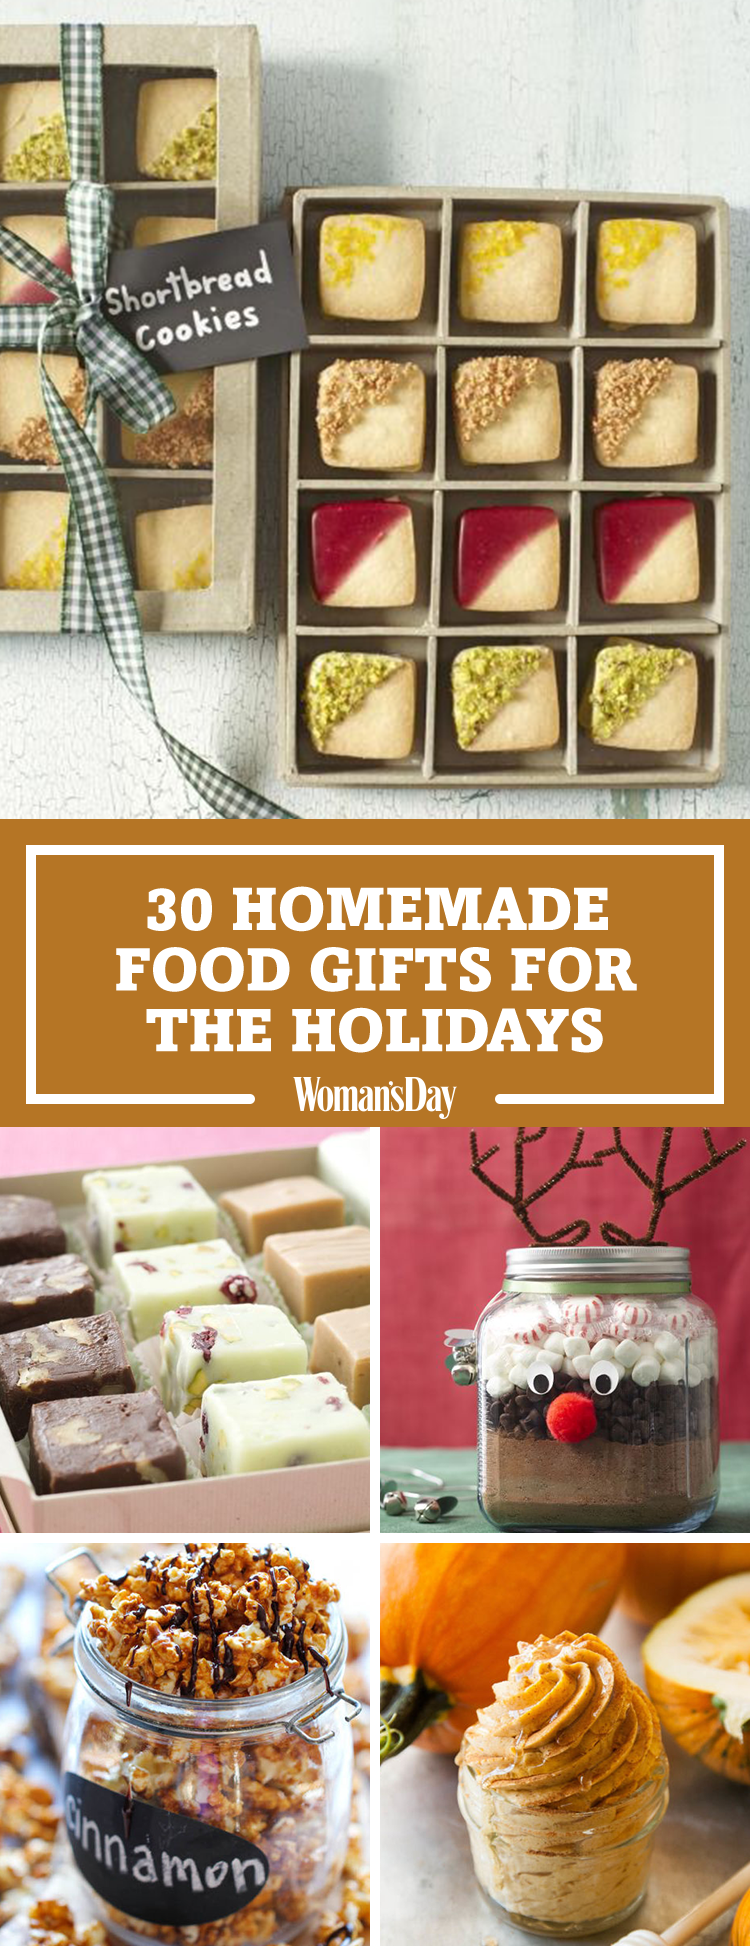 18 diy Gifts food ideas